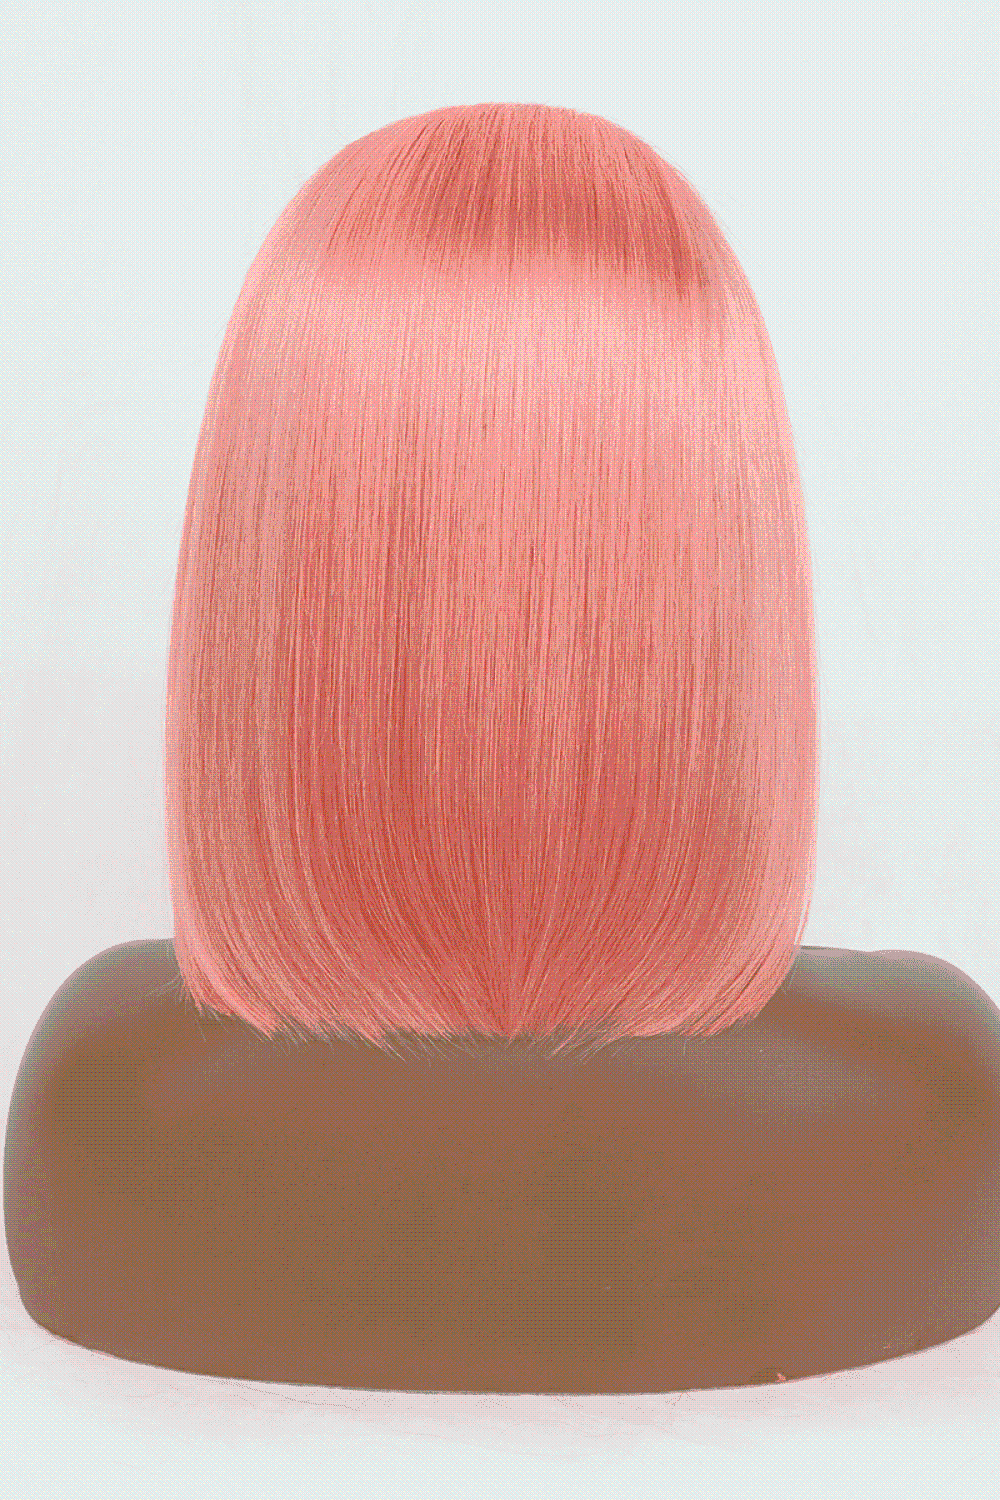 12" 165g Lace Front Wigs Cheveux Humains en Rose Rose Densité 150%